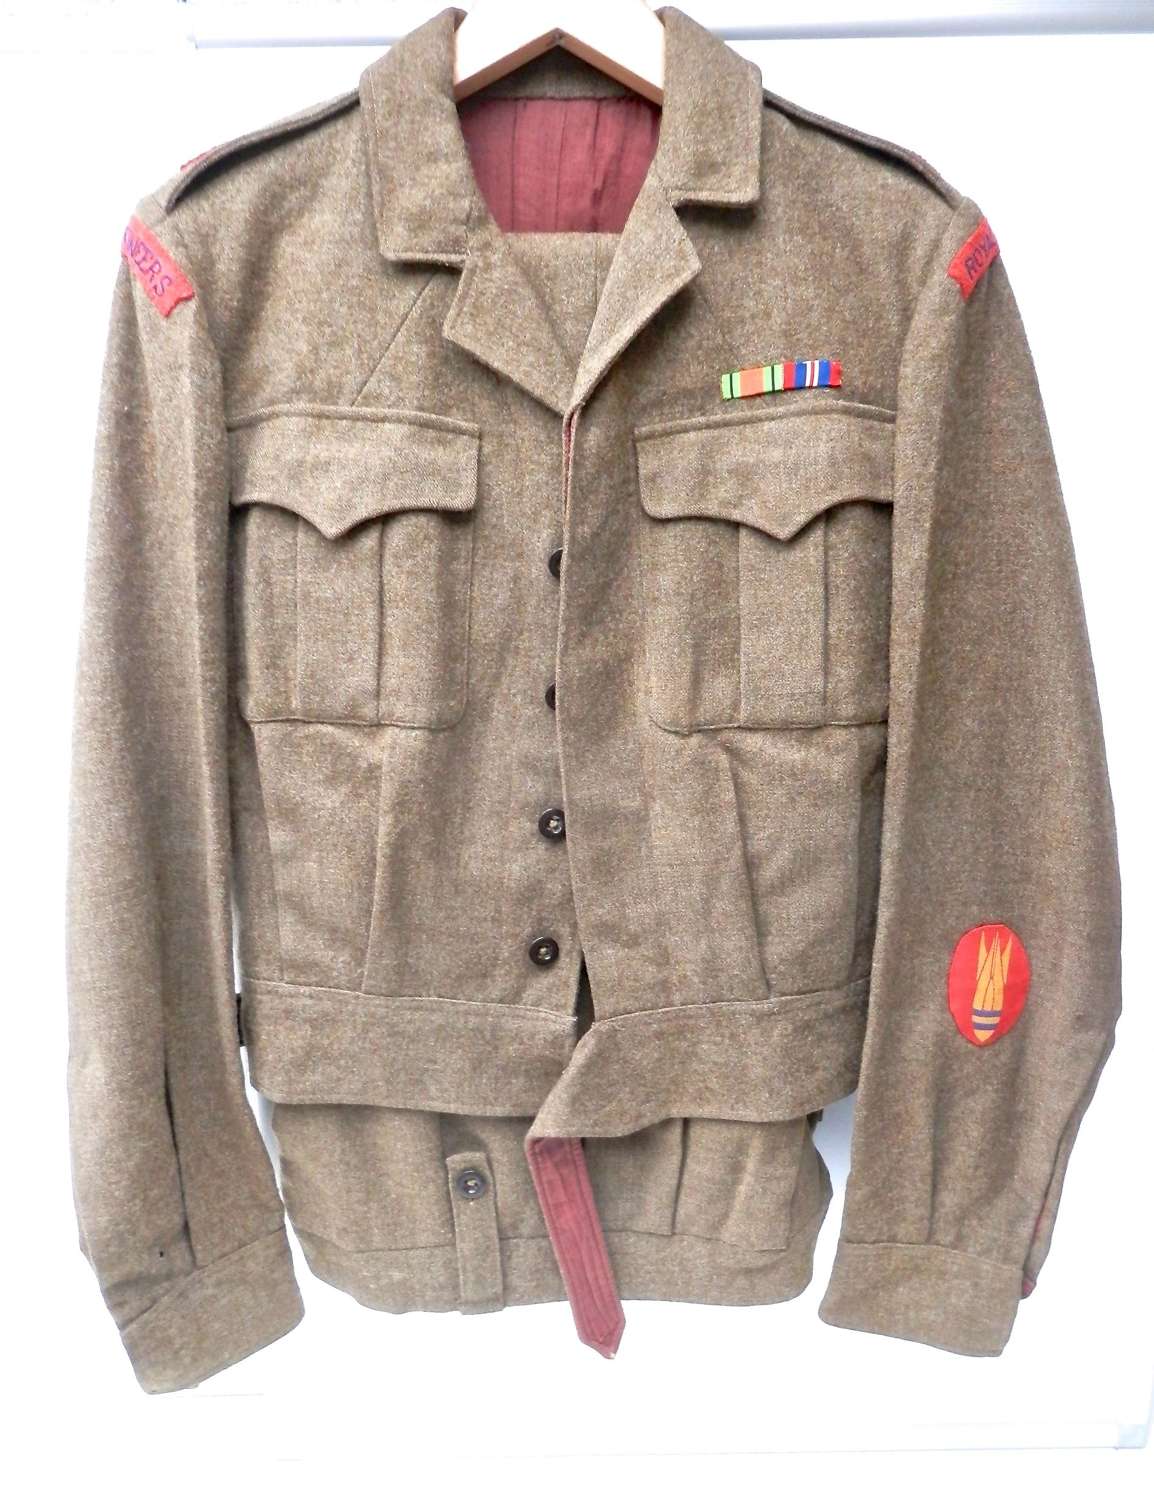 WW2 bomb disposal officer's battle dress uniform